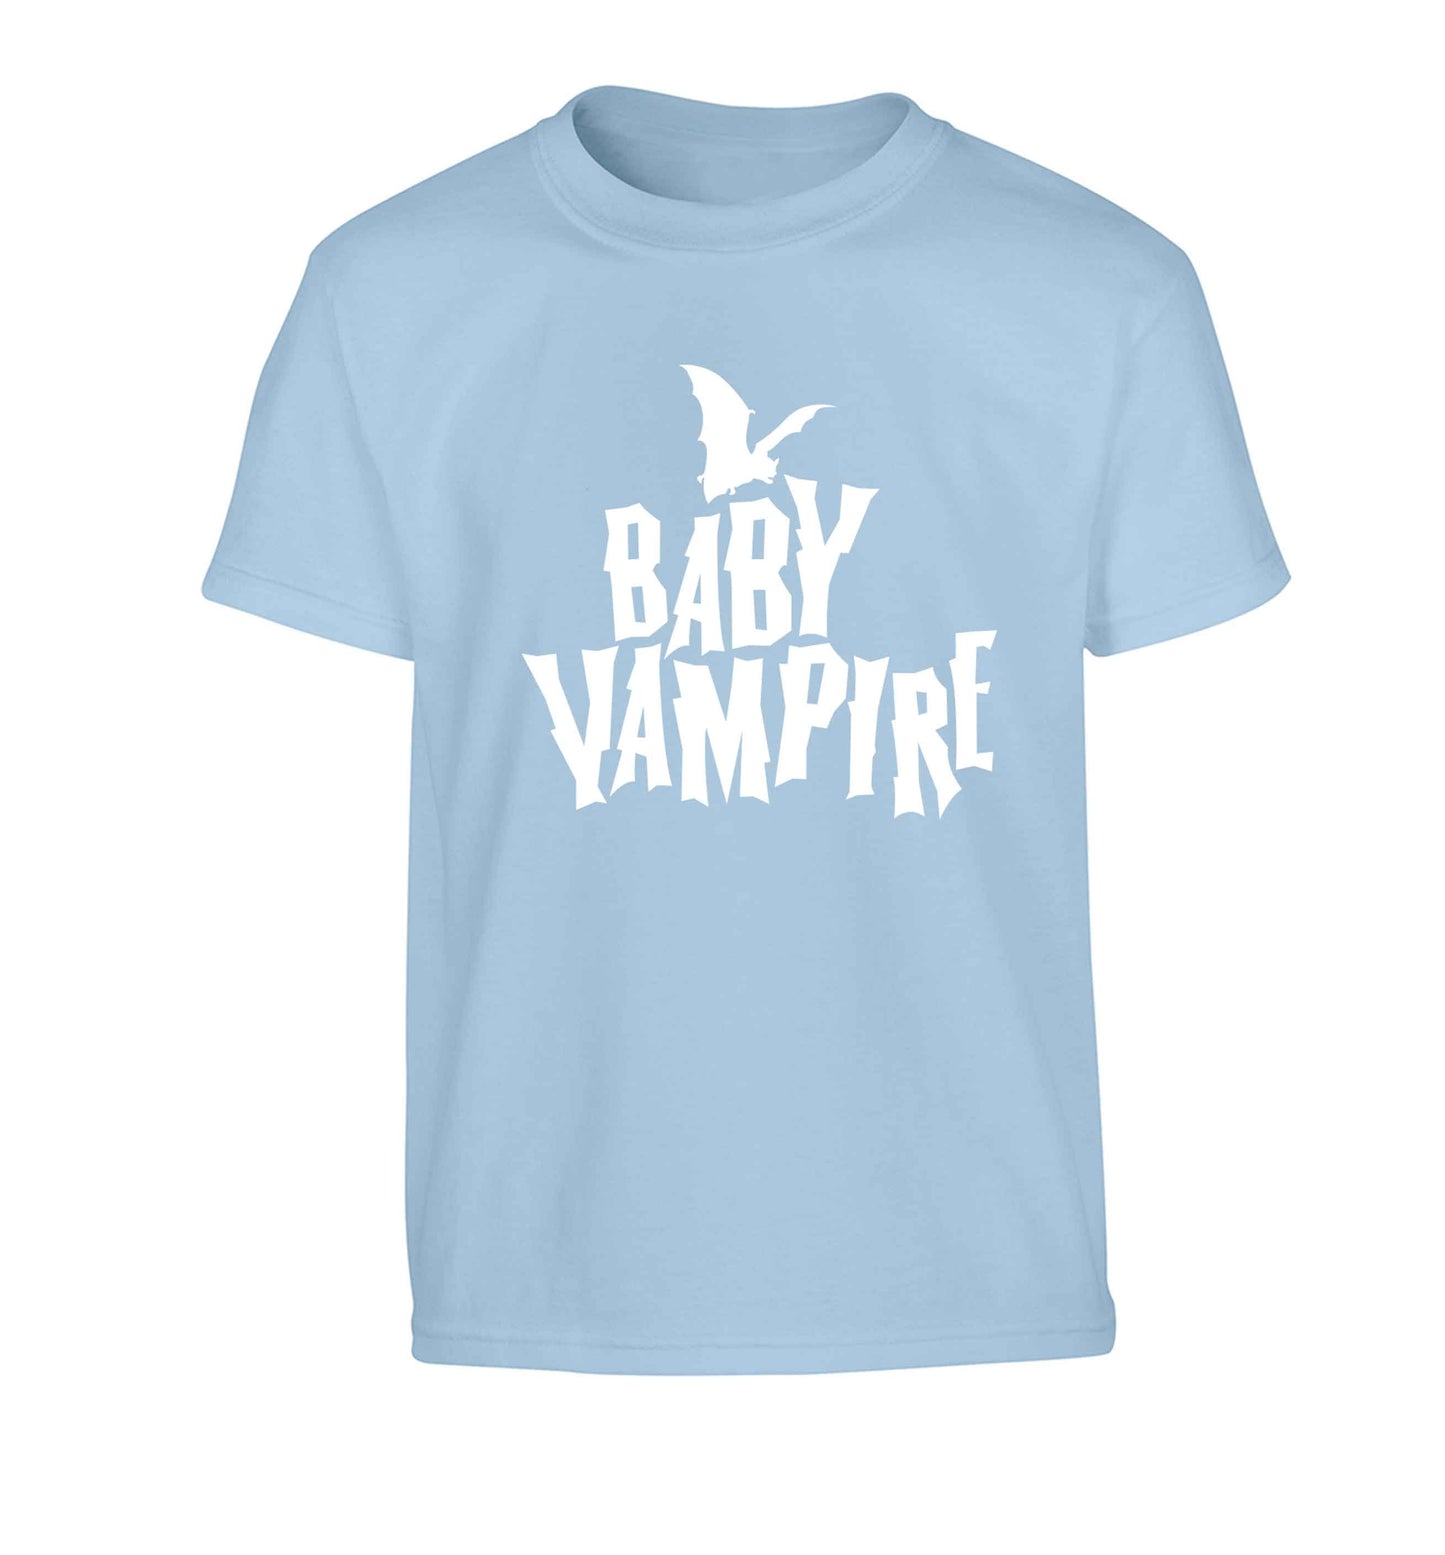 Baby vampire Children's light blue Tshirt 12-13 Years